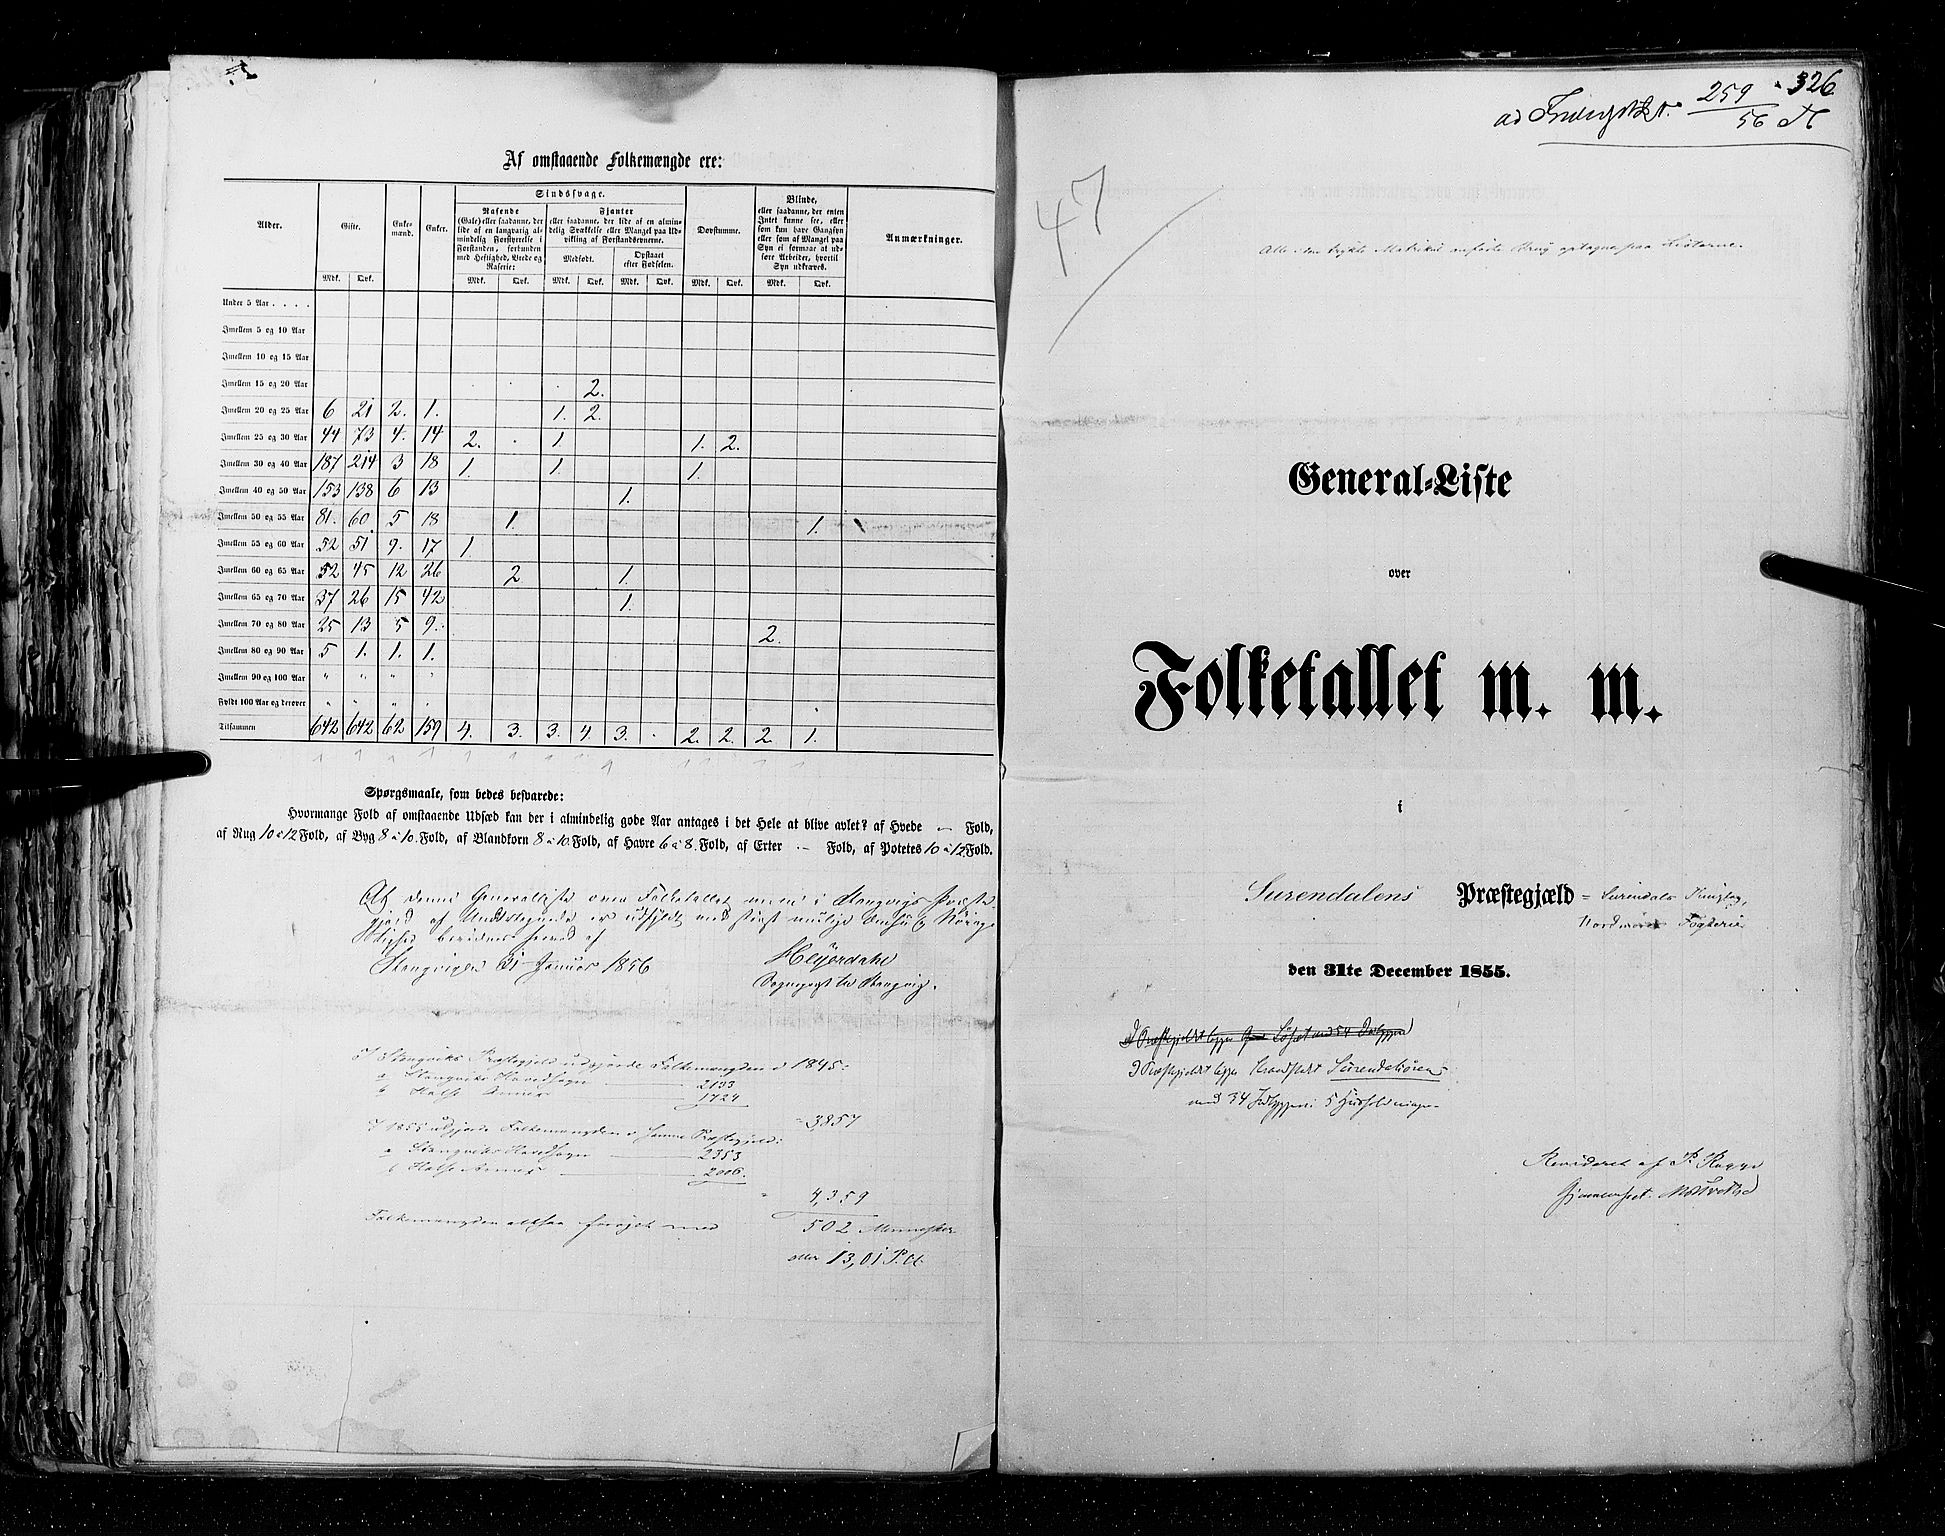 RA, Census 1855, vol. 5: Nordre Bergenhus amt, Romsdal amt og Søndre Trondhjem amt, 1855, p. 326